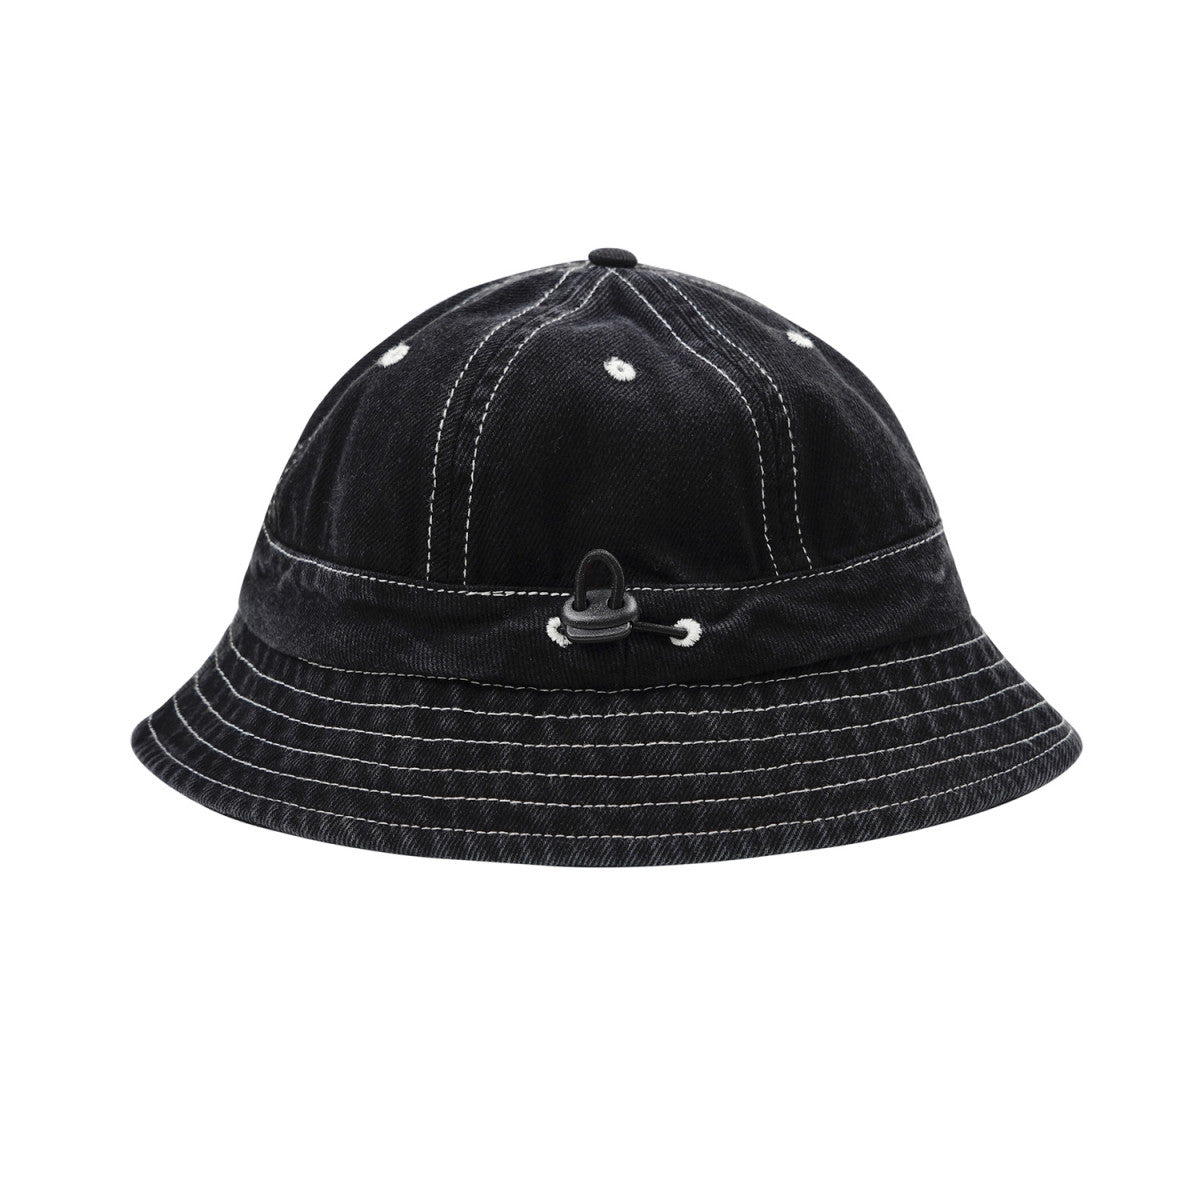 Stitch Bucket Hat Black Denim